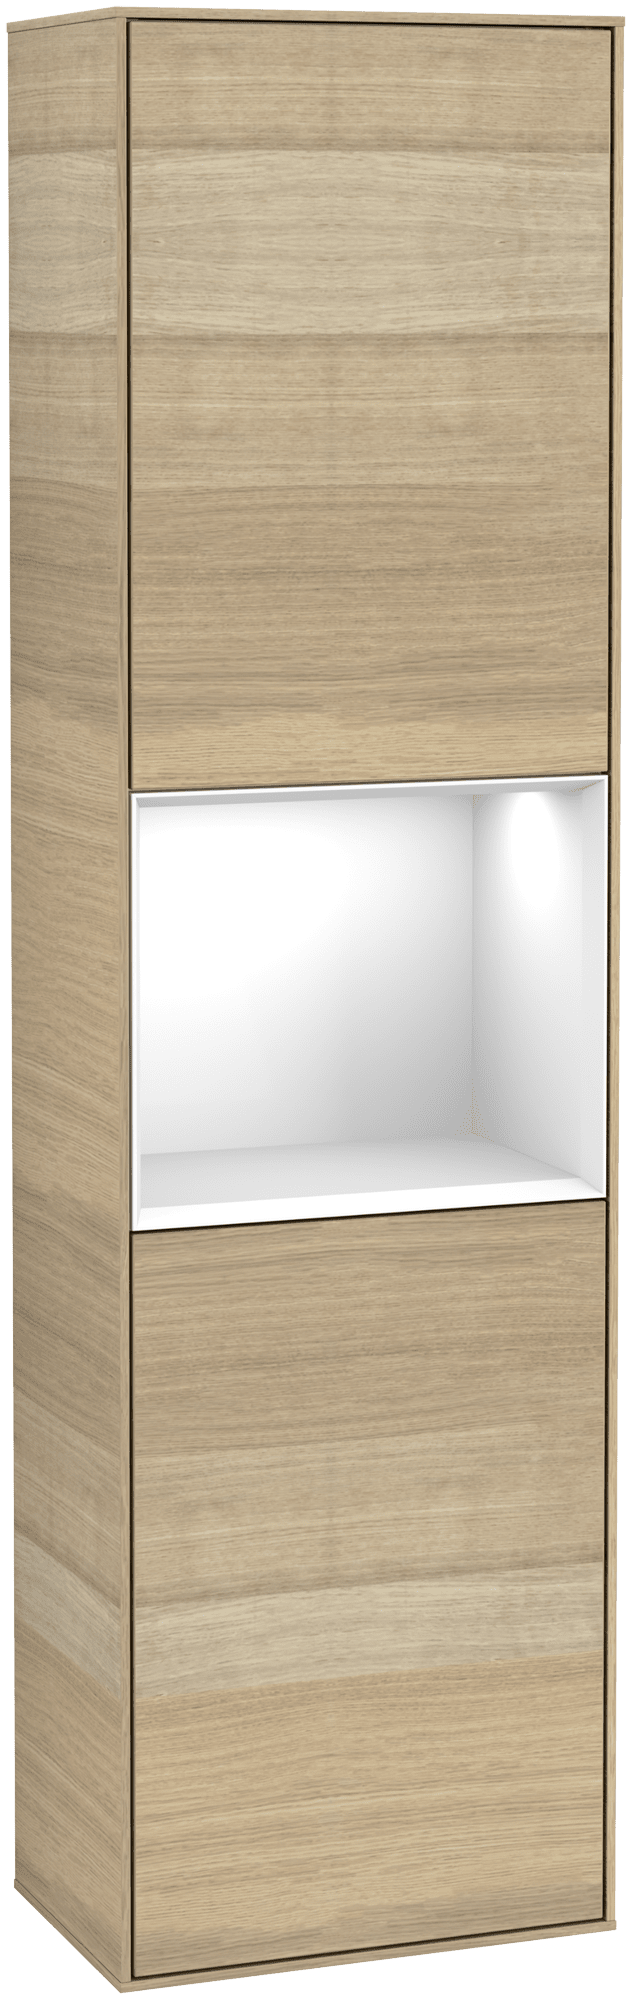 Bild von VILLEROY BOCH Finion Hochschrank, mit Beleuchtung, 2 Türen, 418 x 1516 x 270 mm, Oak Veneer / Glossy White Lacquer #G470GFPC